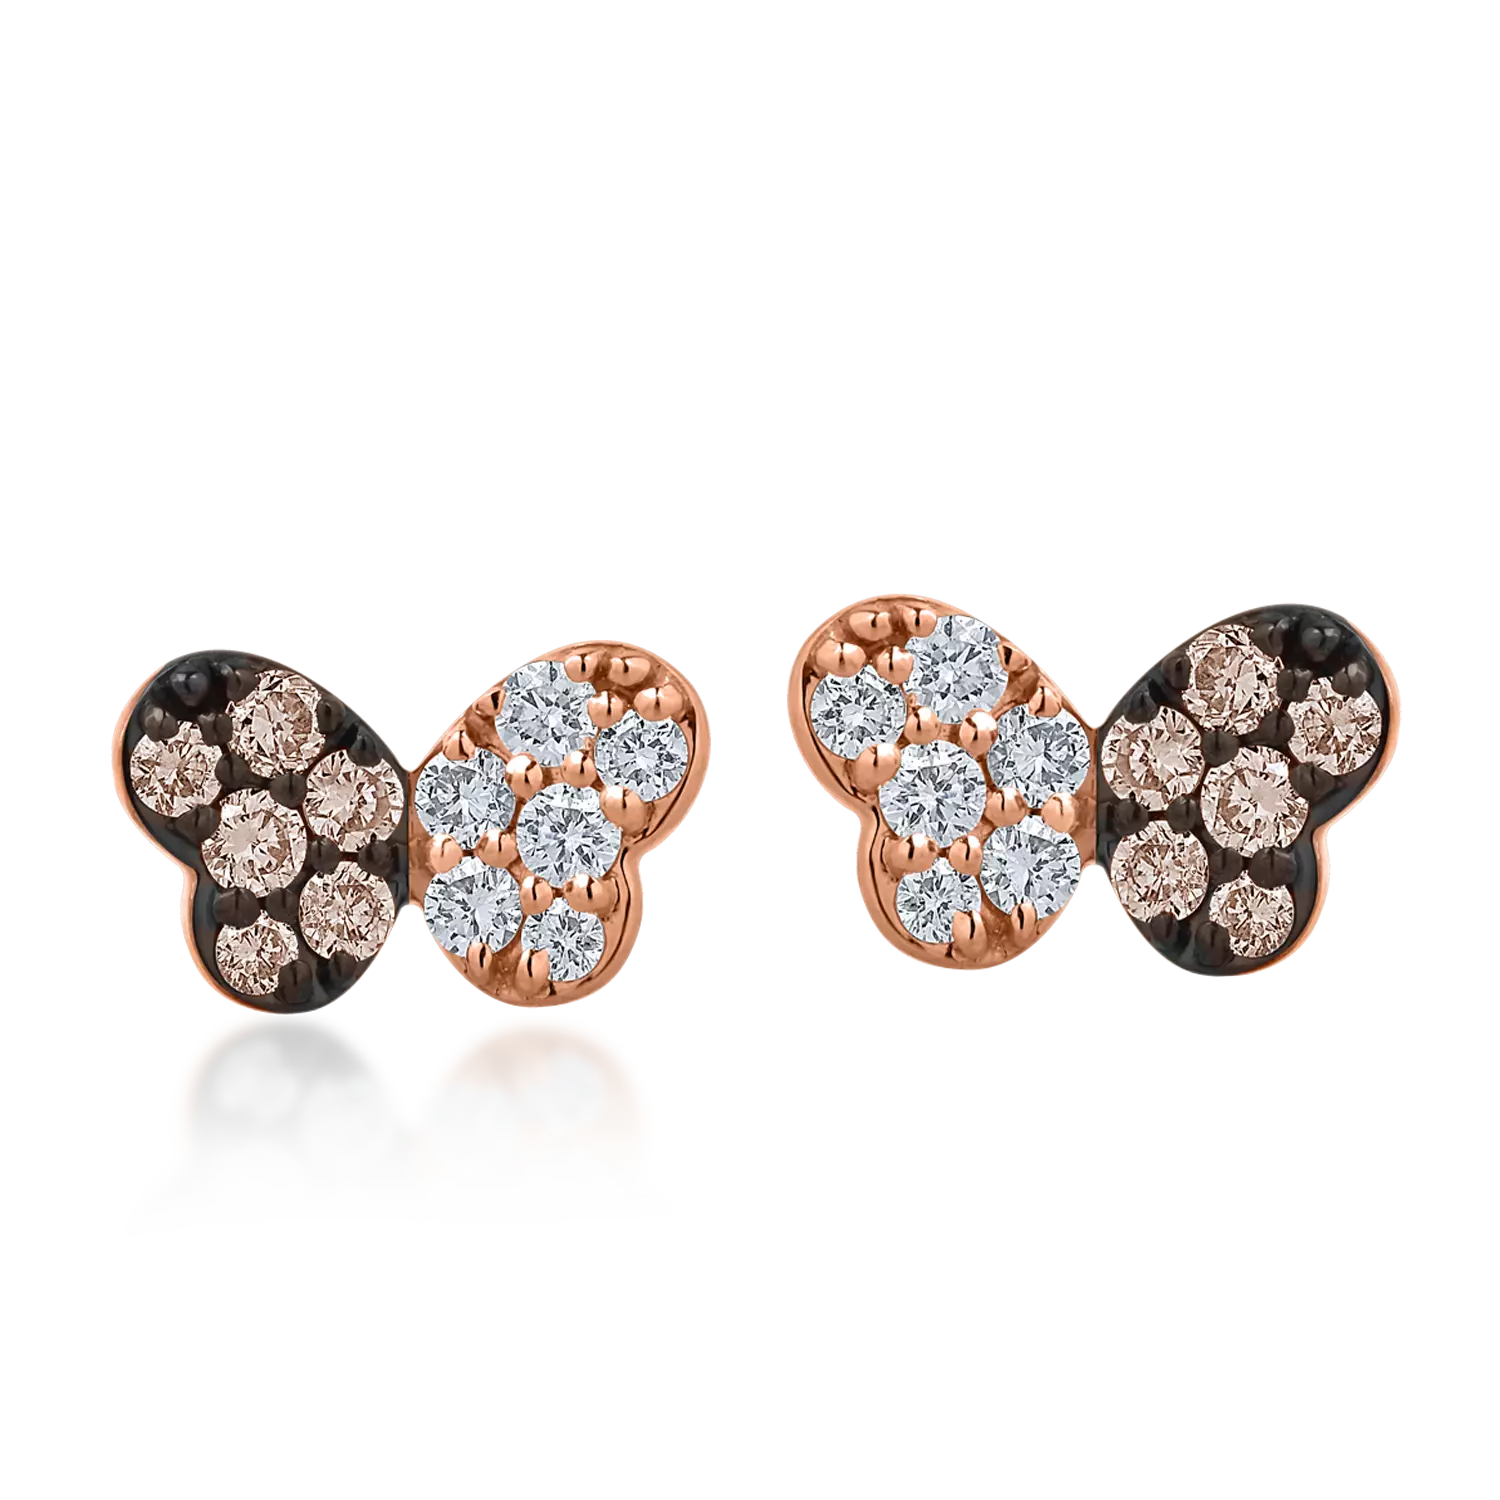 Rózsarany pillangós fülbevaló 0.15ct barna gyémántokkal és 0.14ct tiszta gyémántokkal